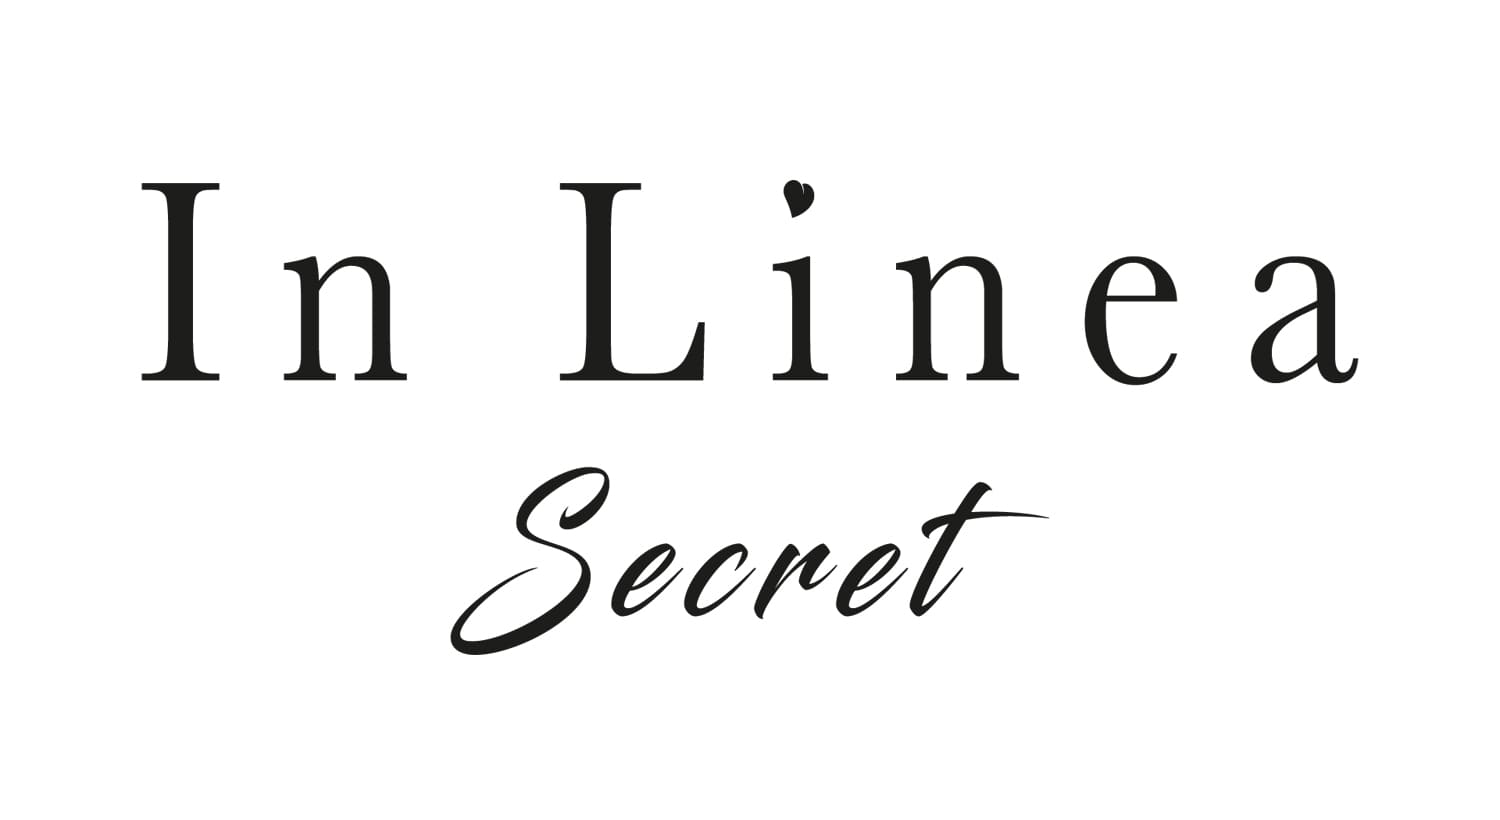 In Linea Secret